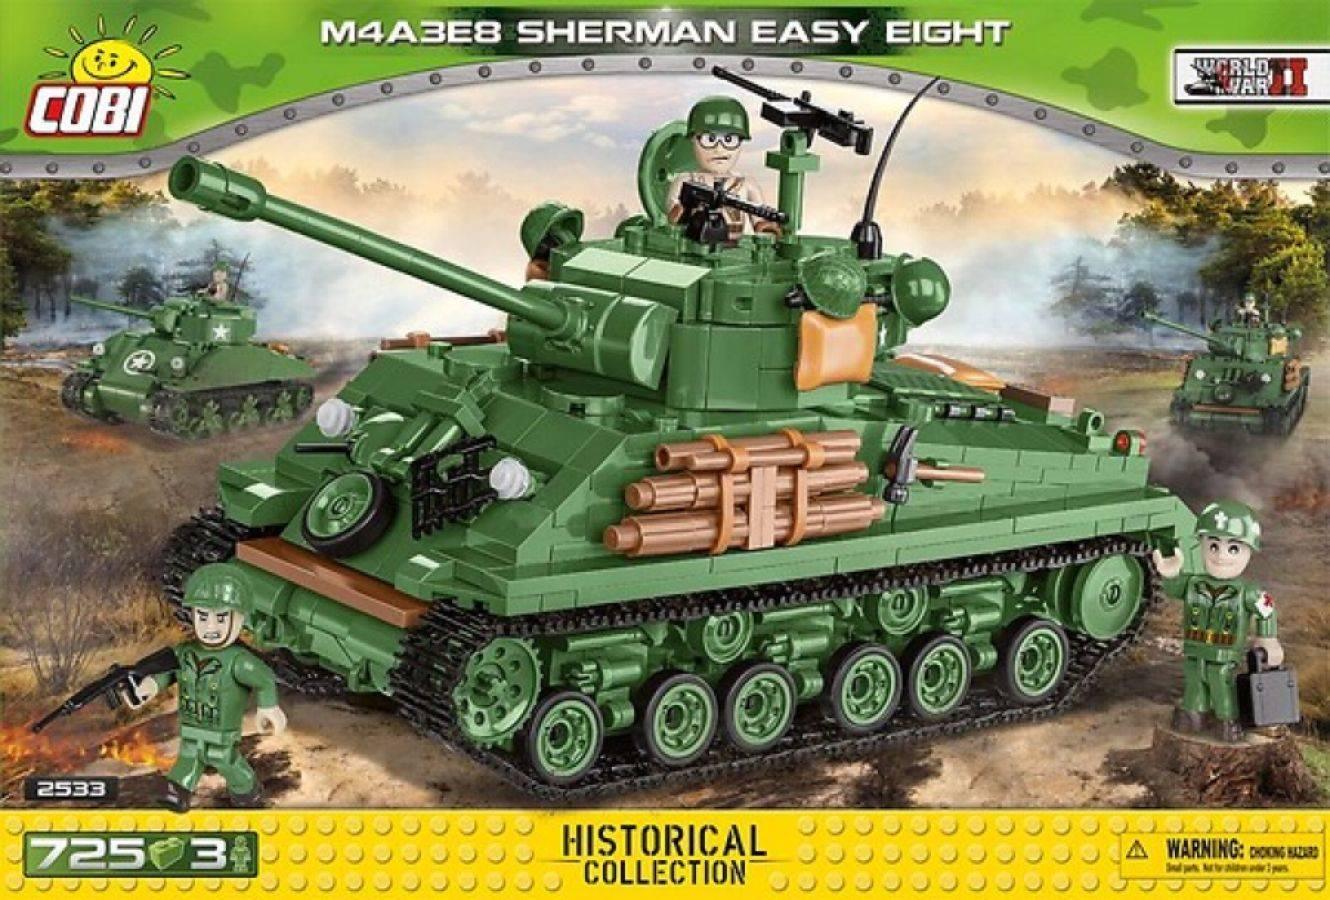 COB2533 World War II - M4A3 Sherman Easy Eight (725 pieces) - Cobi - Titan Pop Culture